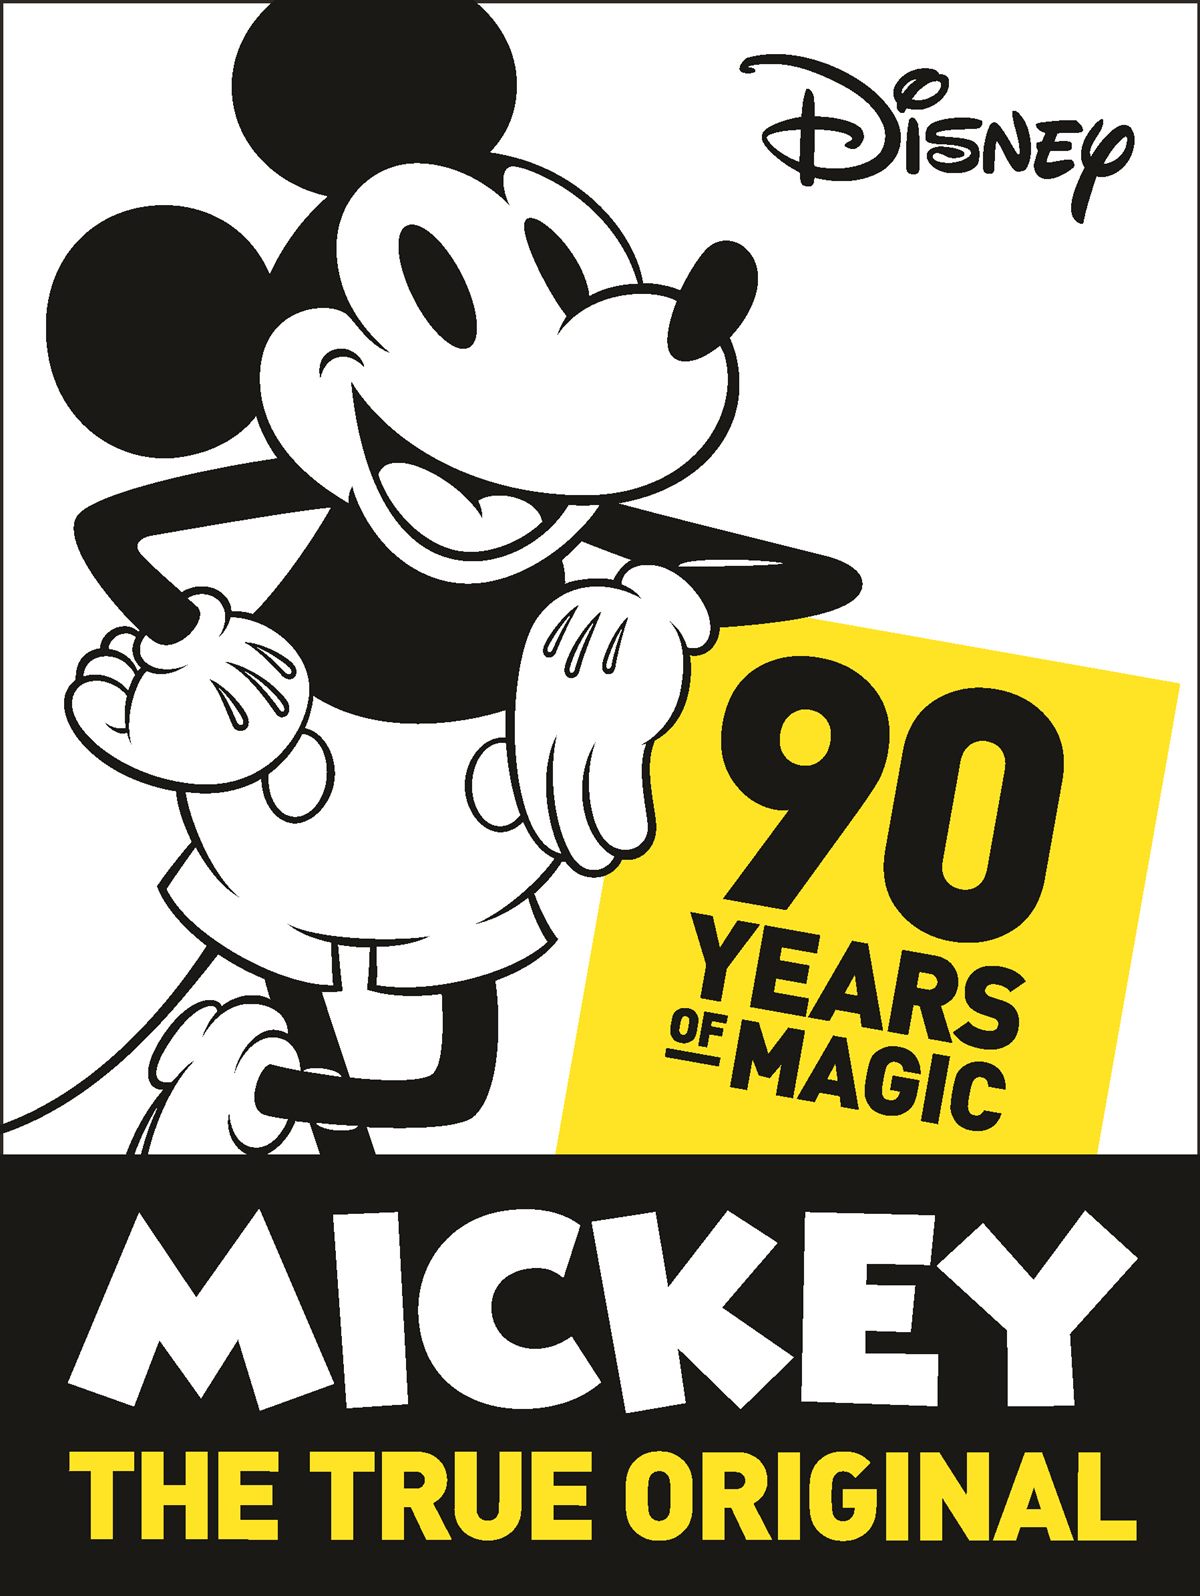 Mickey Mouse feiert sein 90. Jubiläum